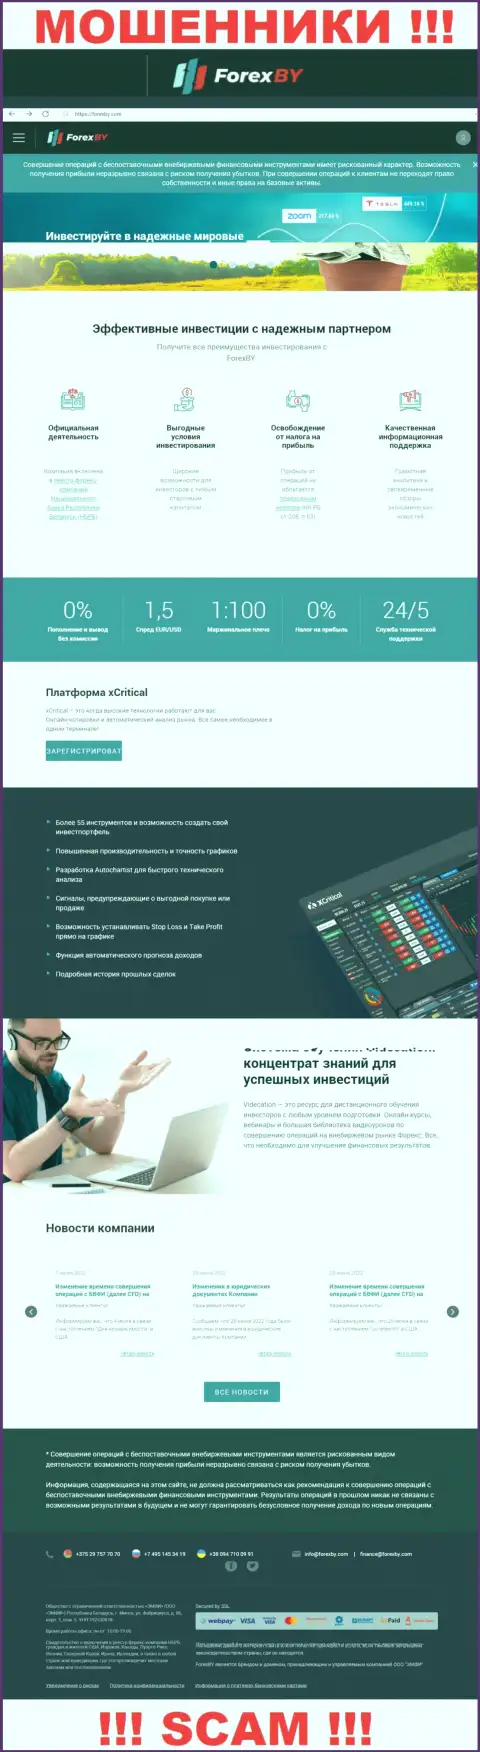 Официальный web-сайт мошенников Forex BY